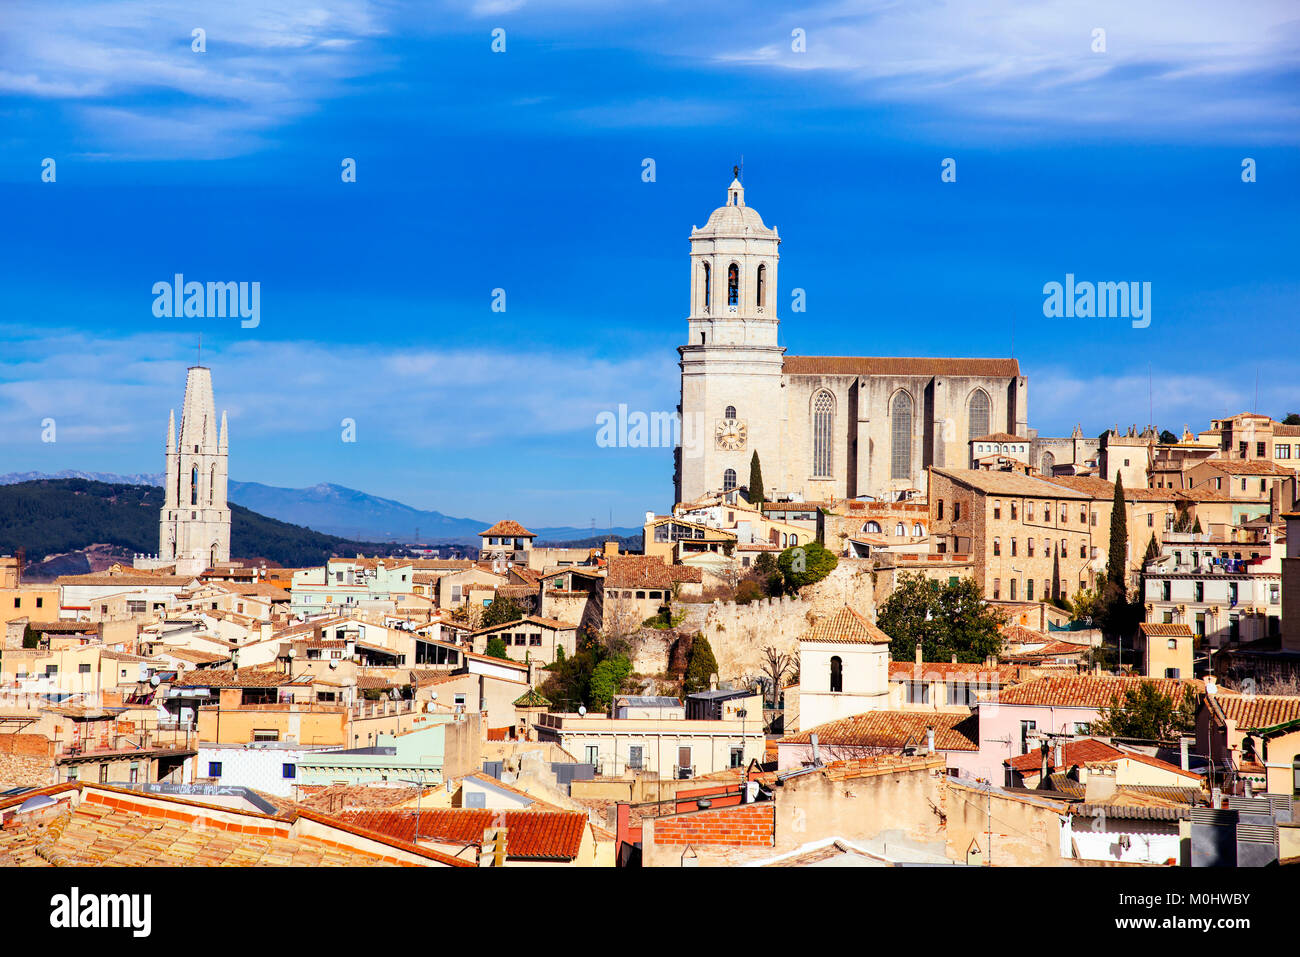 Ein luftbild der Altstadt von Girona, in Spanien, von oben Hervorhebung der Glockenturm der Kathedrale auf der rechten Seite gesehen, und der Glockenturm von t Stockfoto